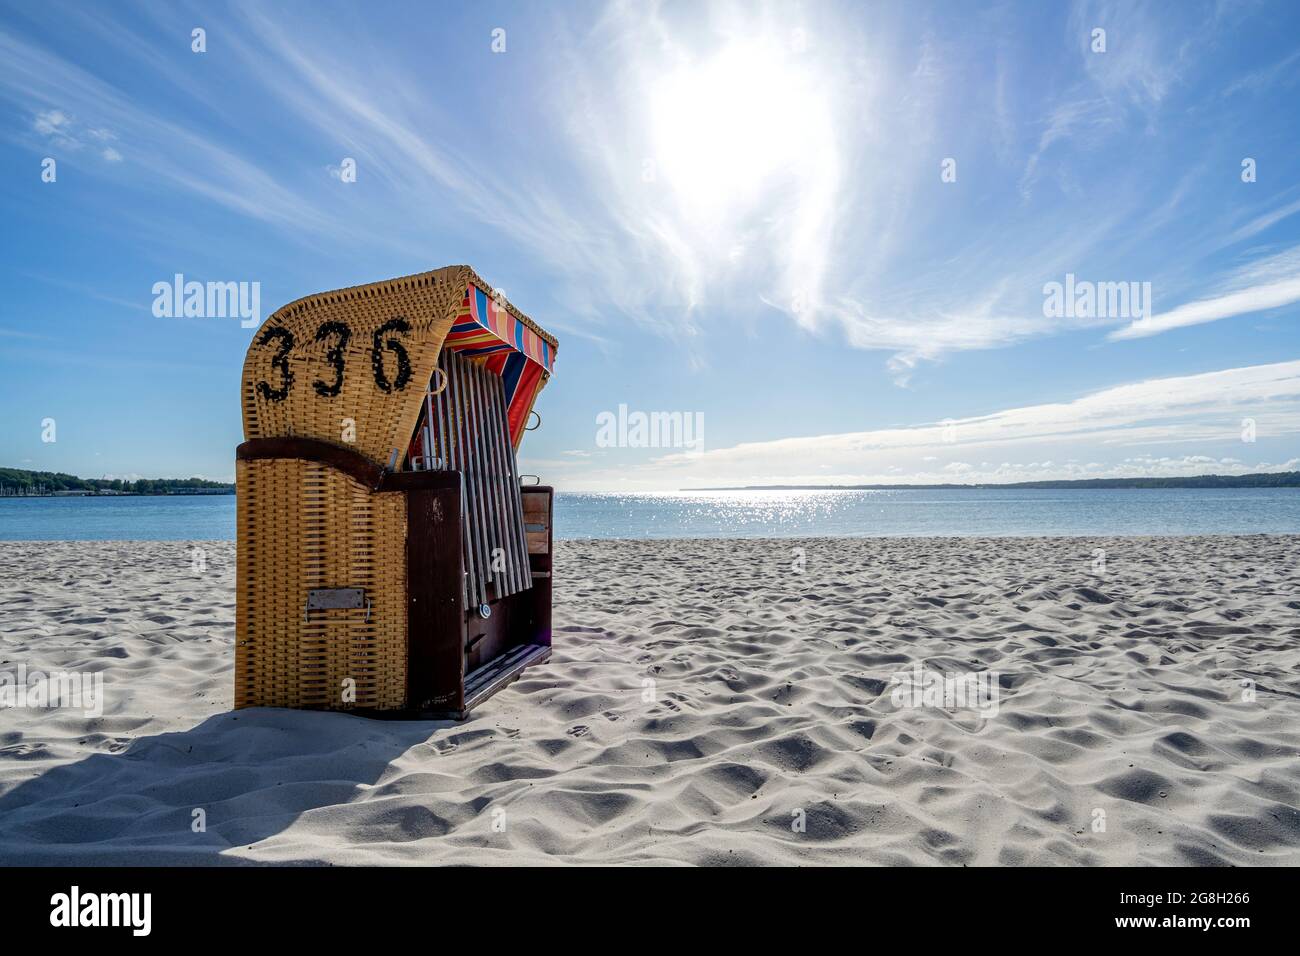 traditional Strandkorb beach chair at Baltic Sea beach Stock Photo